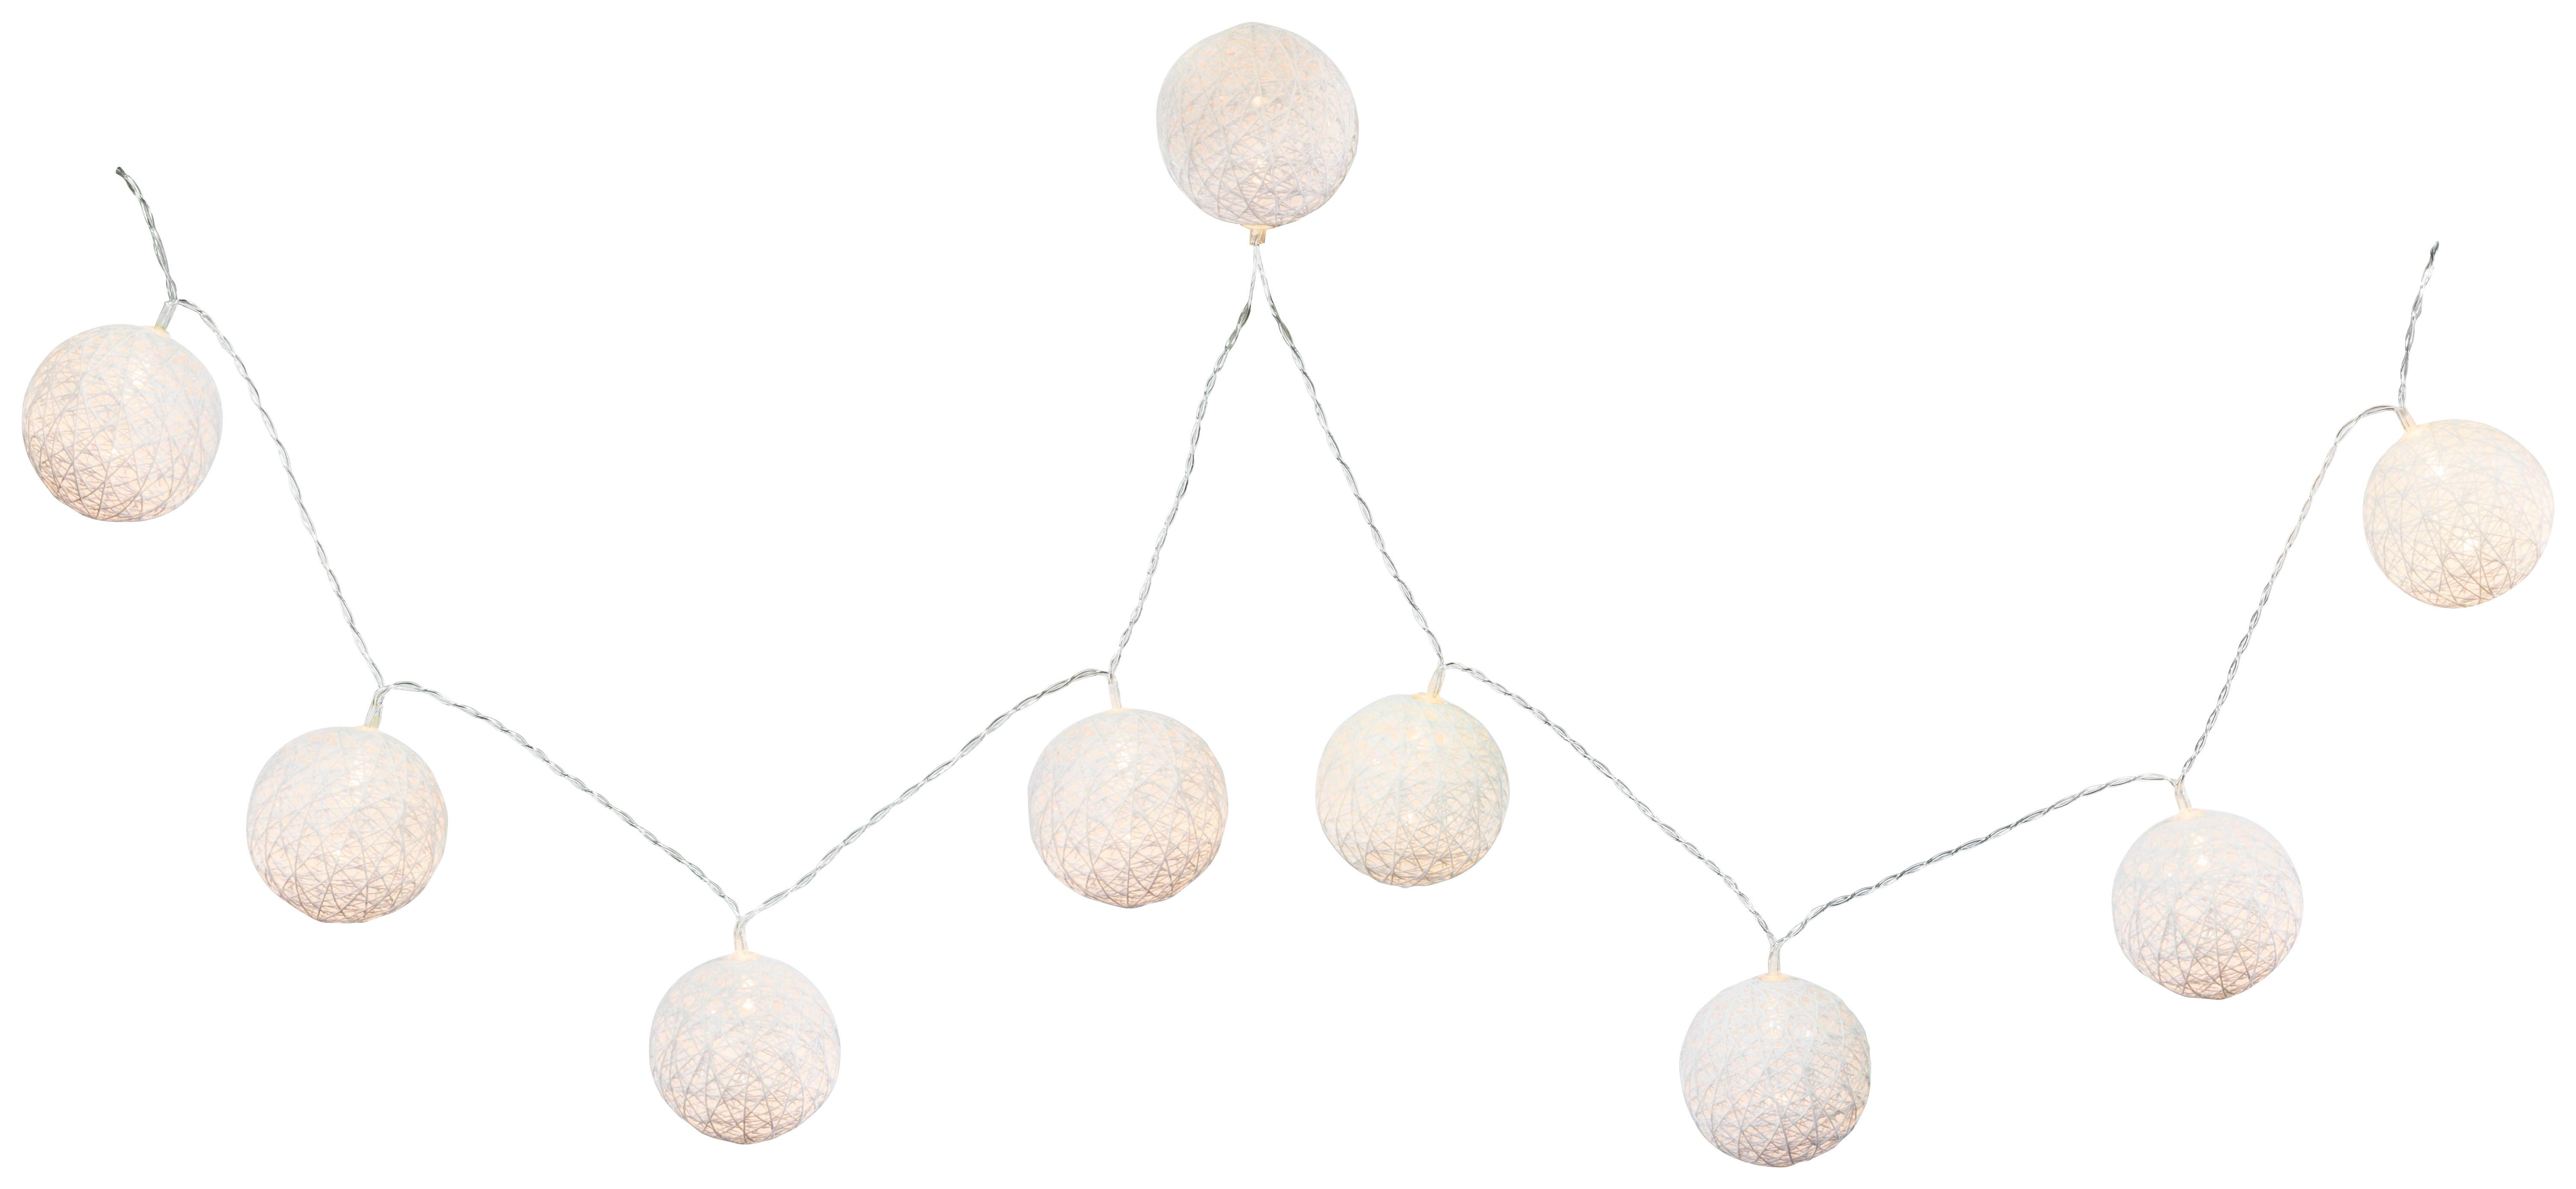 Světelný Řetěz Schnurli Max. 0,06 Watt, 1,7m - bílá, Romantický / Rustikální, plast (6/170cm) - Modern Living